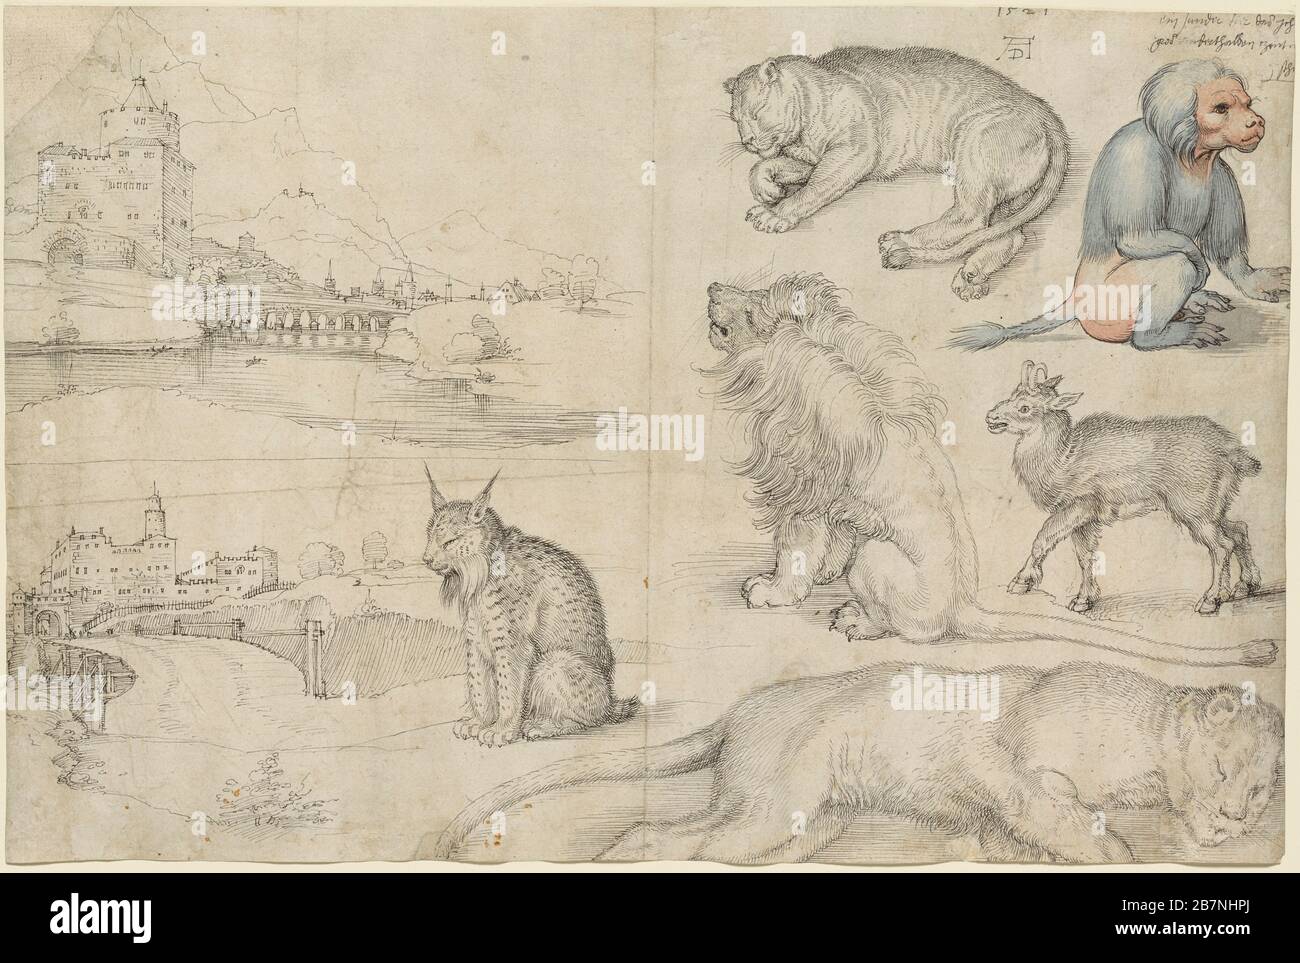 Skizzen von Tieren und Landschaften, 1521. Gefunden in der Sammlung des Clark Art Institute, Williamstown, Massachusetts. Stockfoto